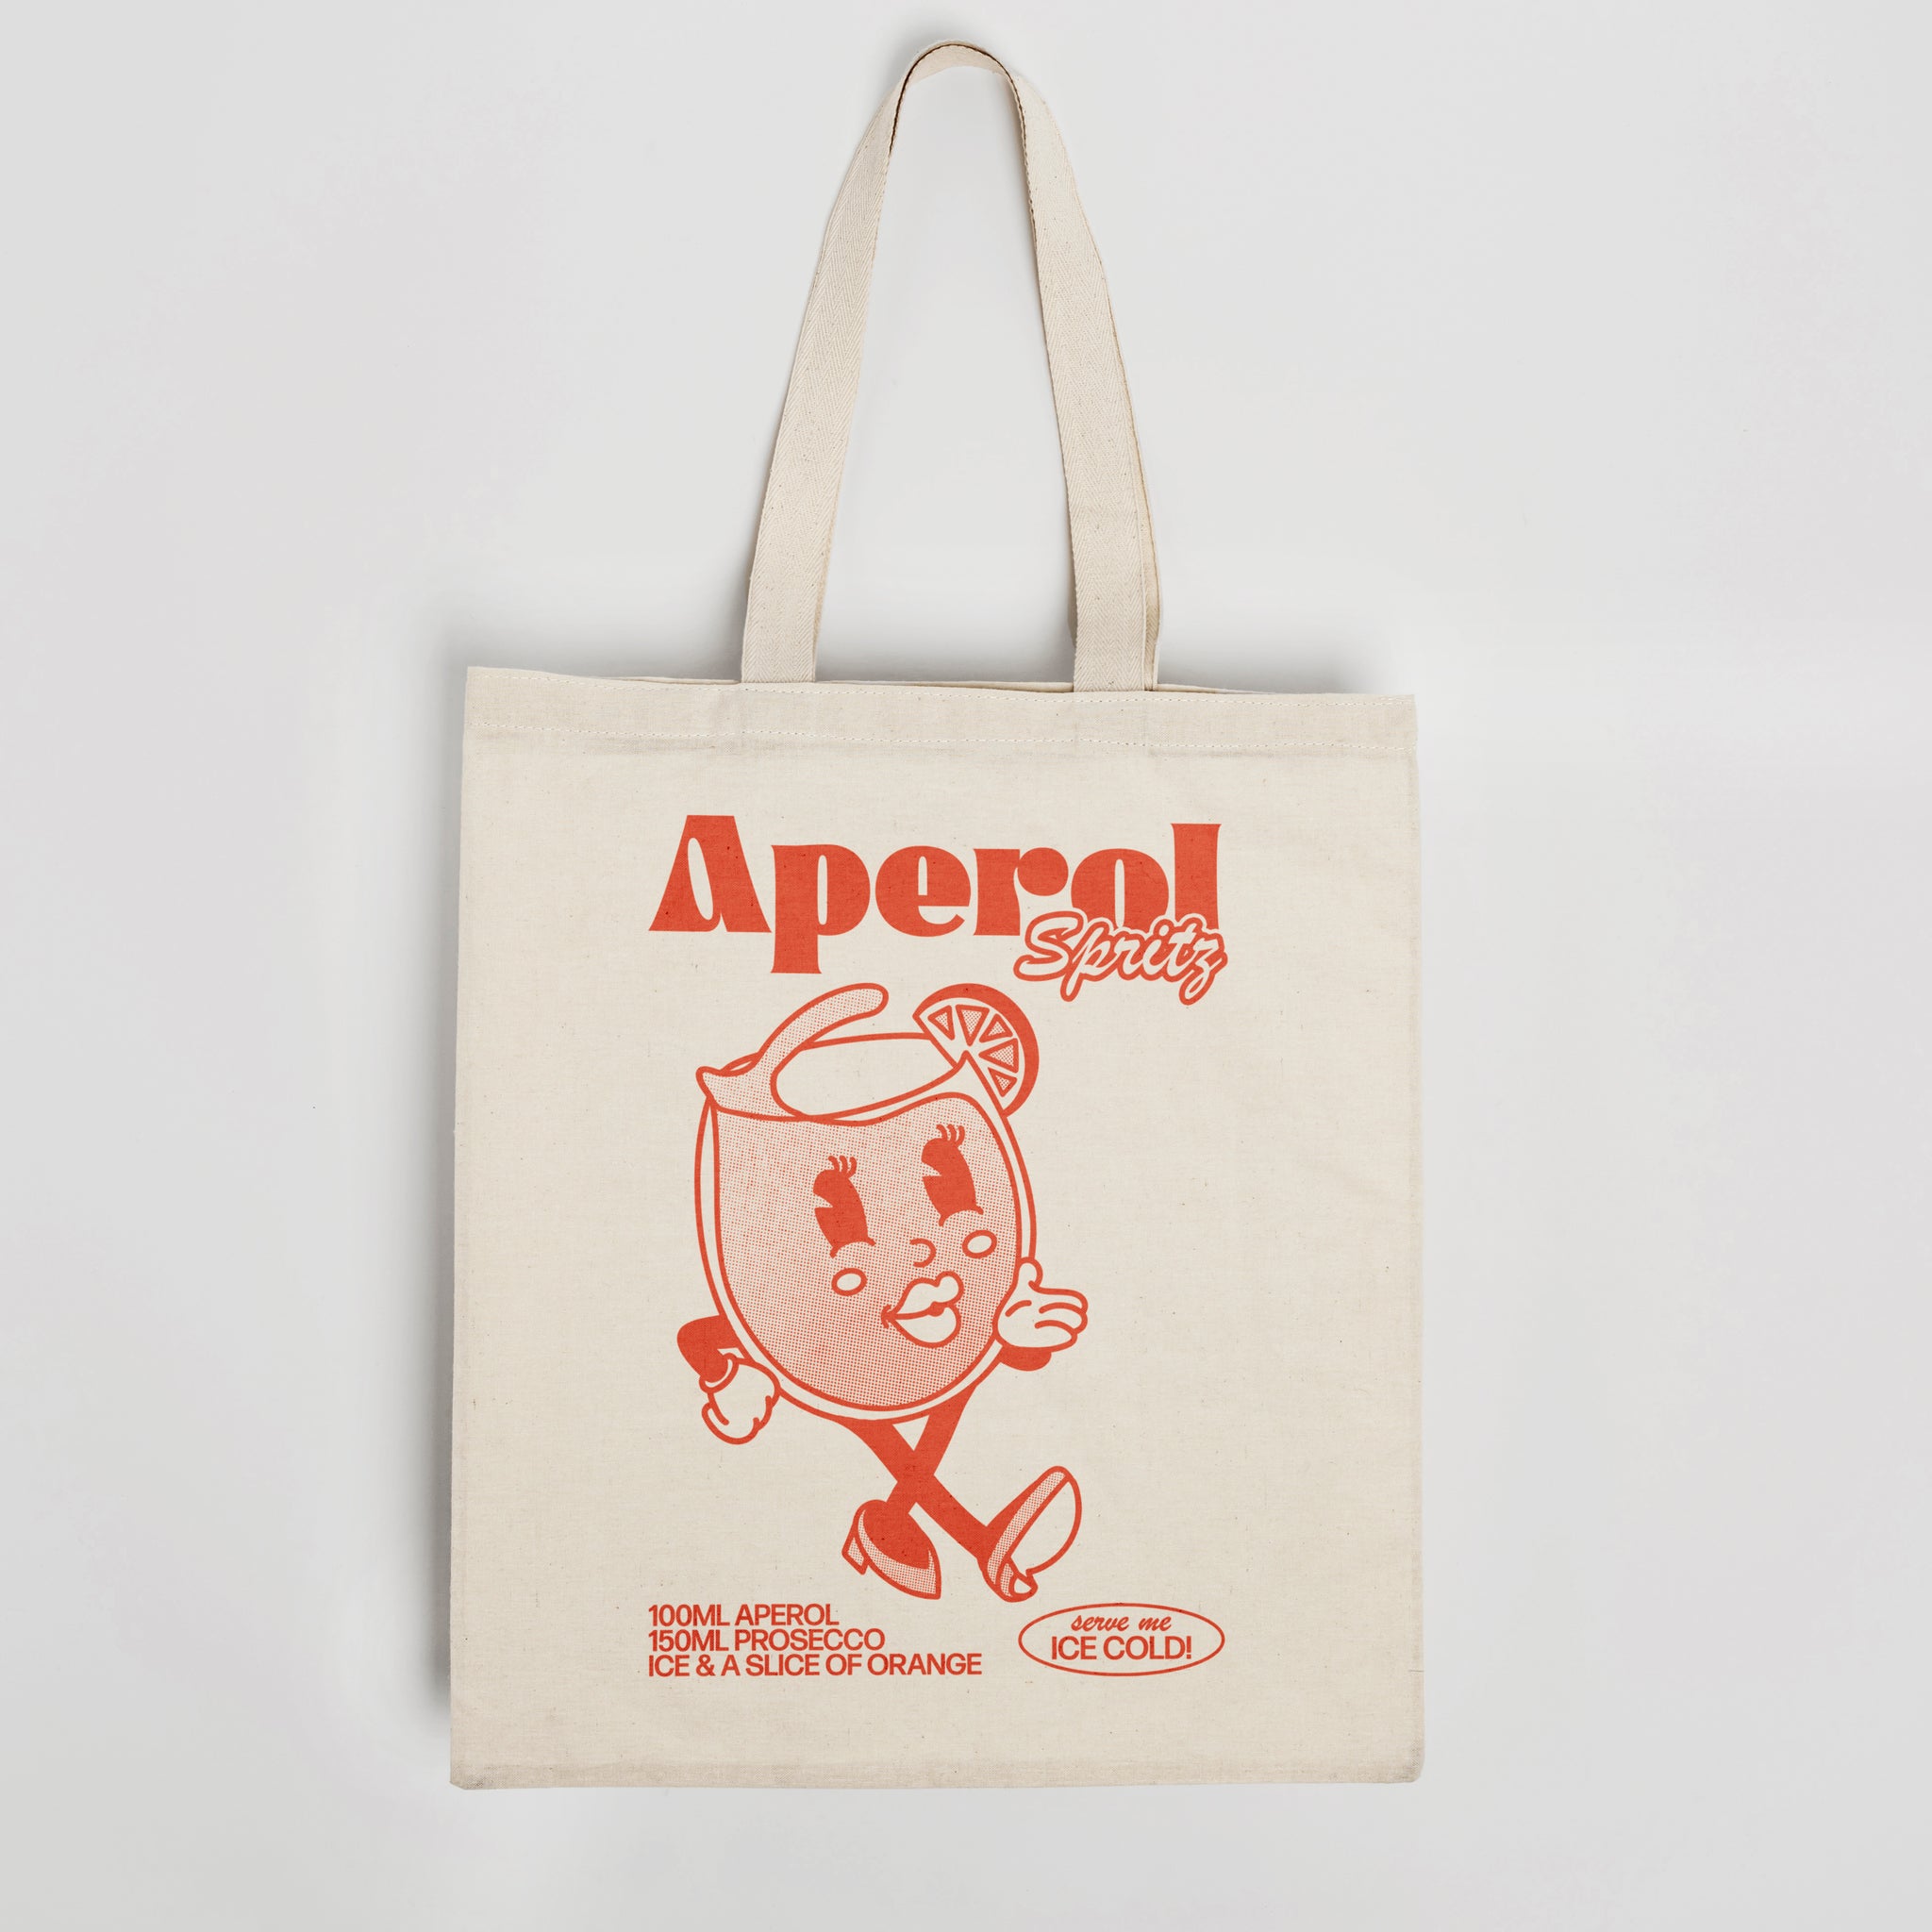 'Aperol Spritz' organic cotton canvas tote bag